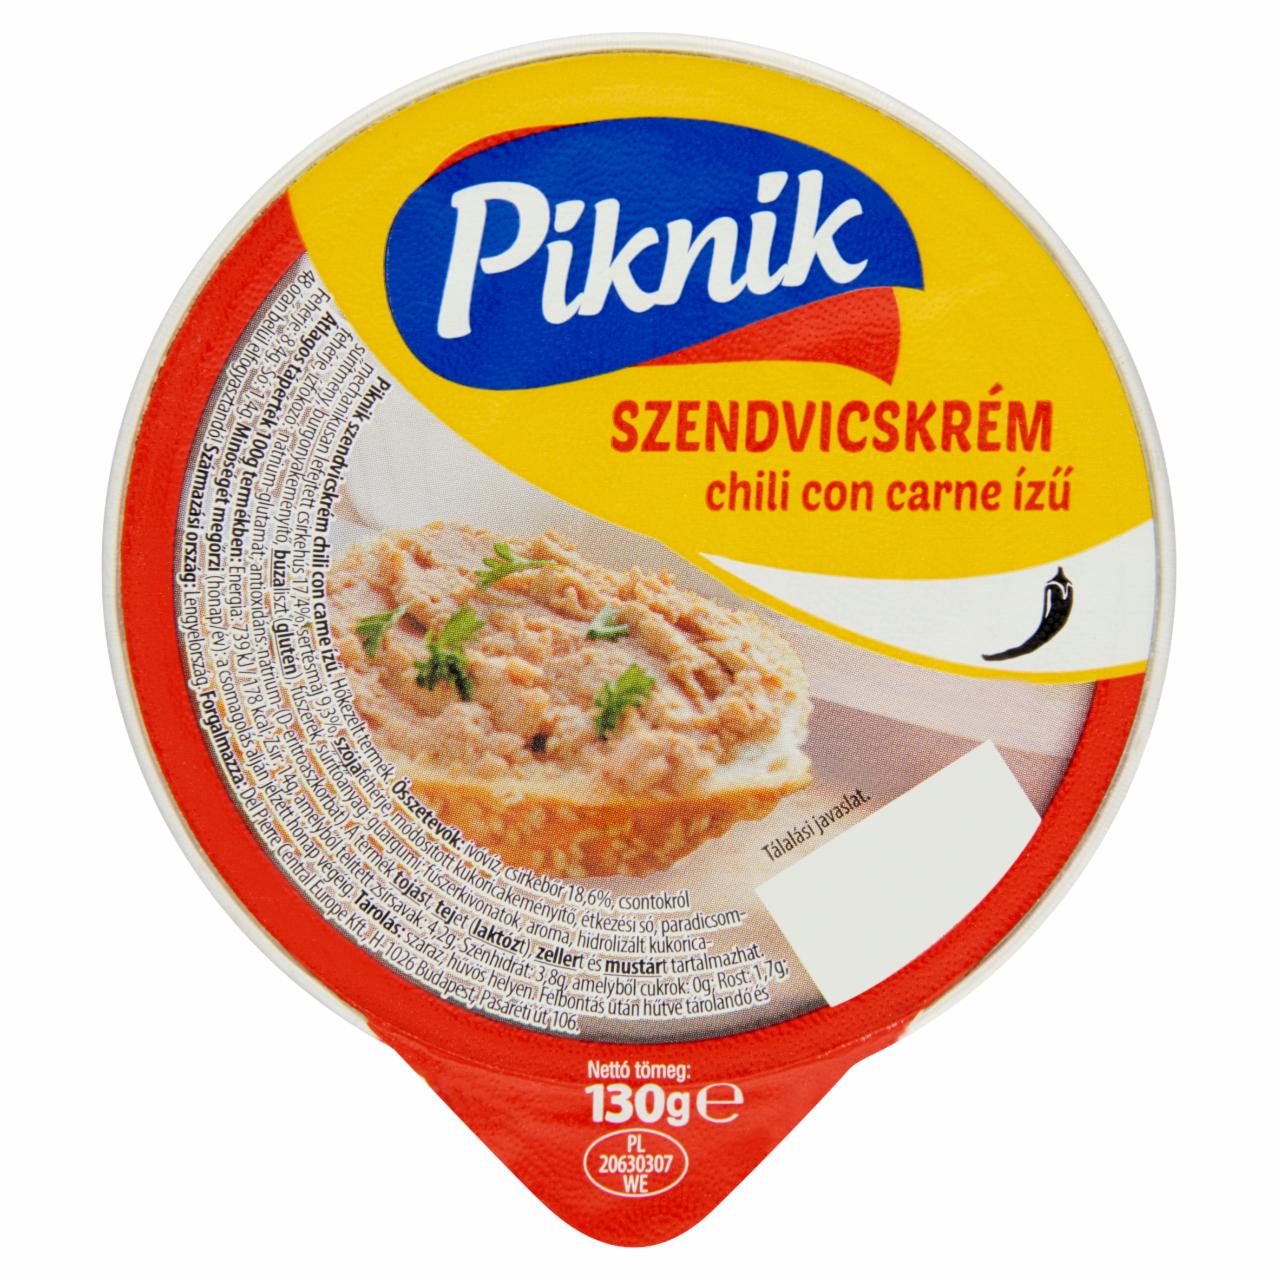 Képek - Piknik chili con carne ízű szendvicskrém 130 g